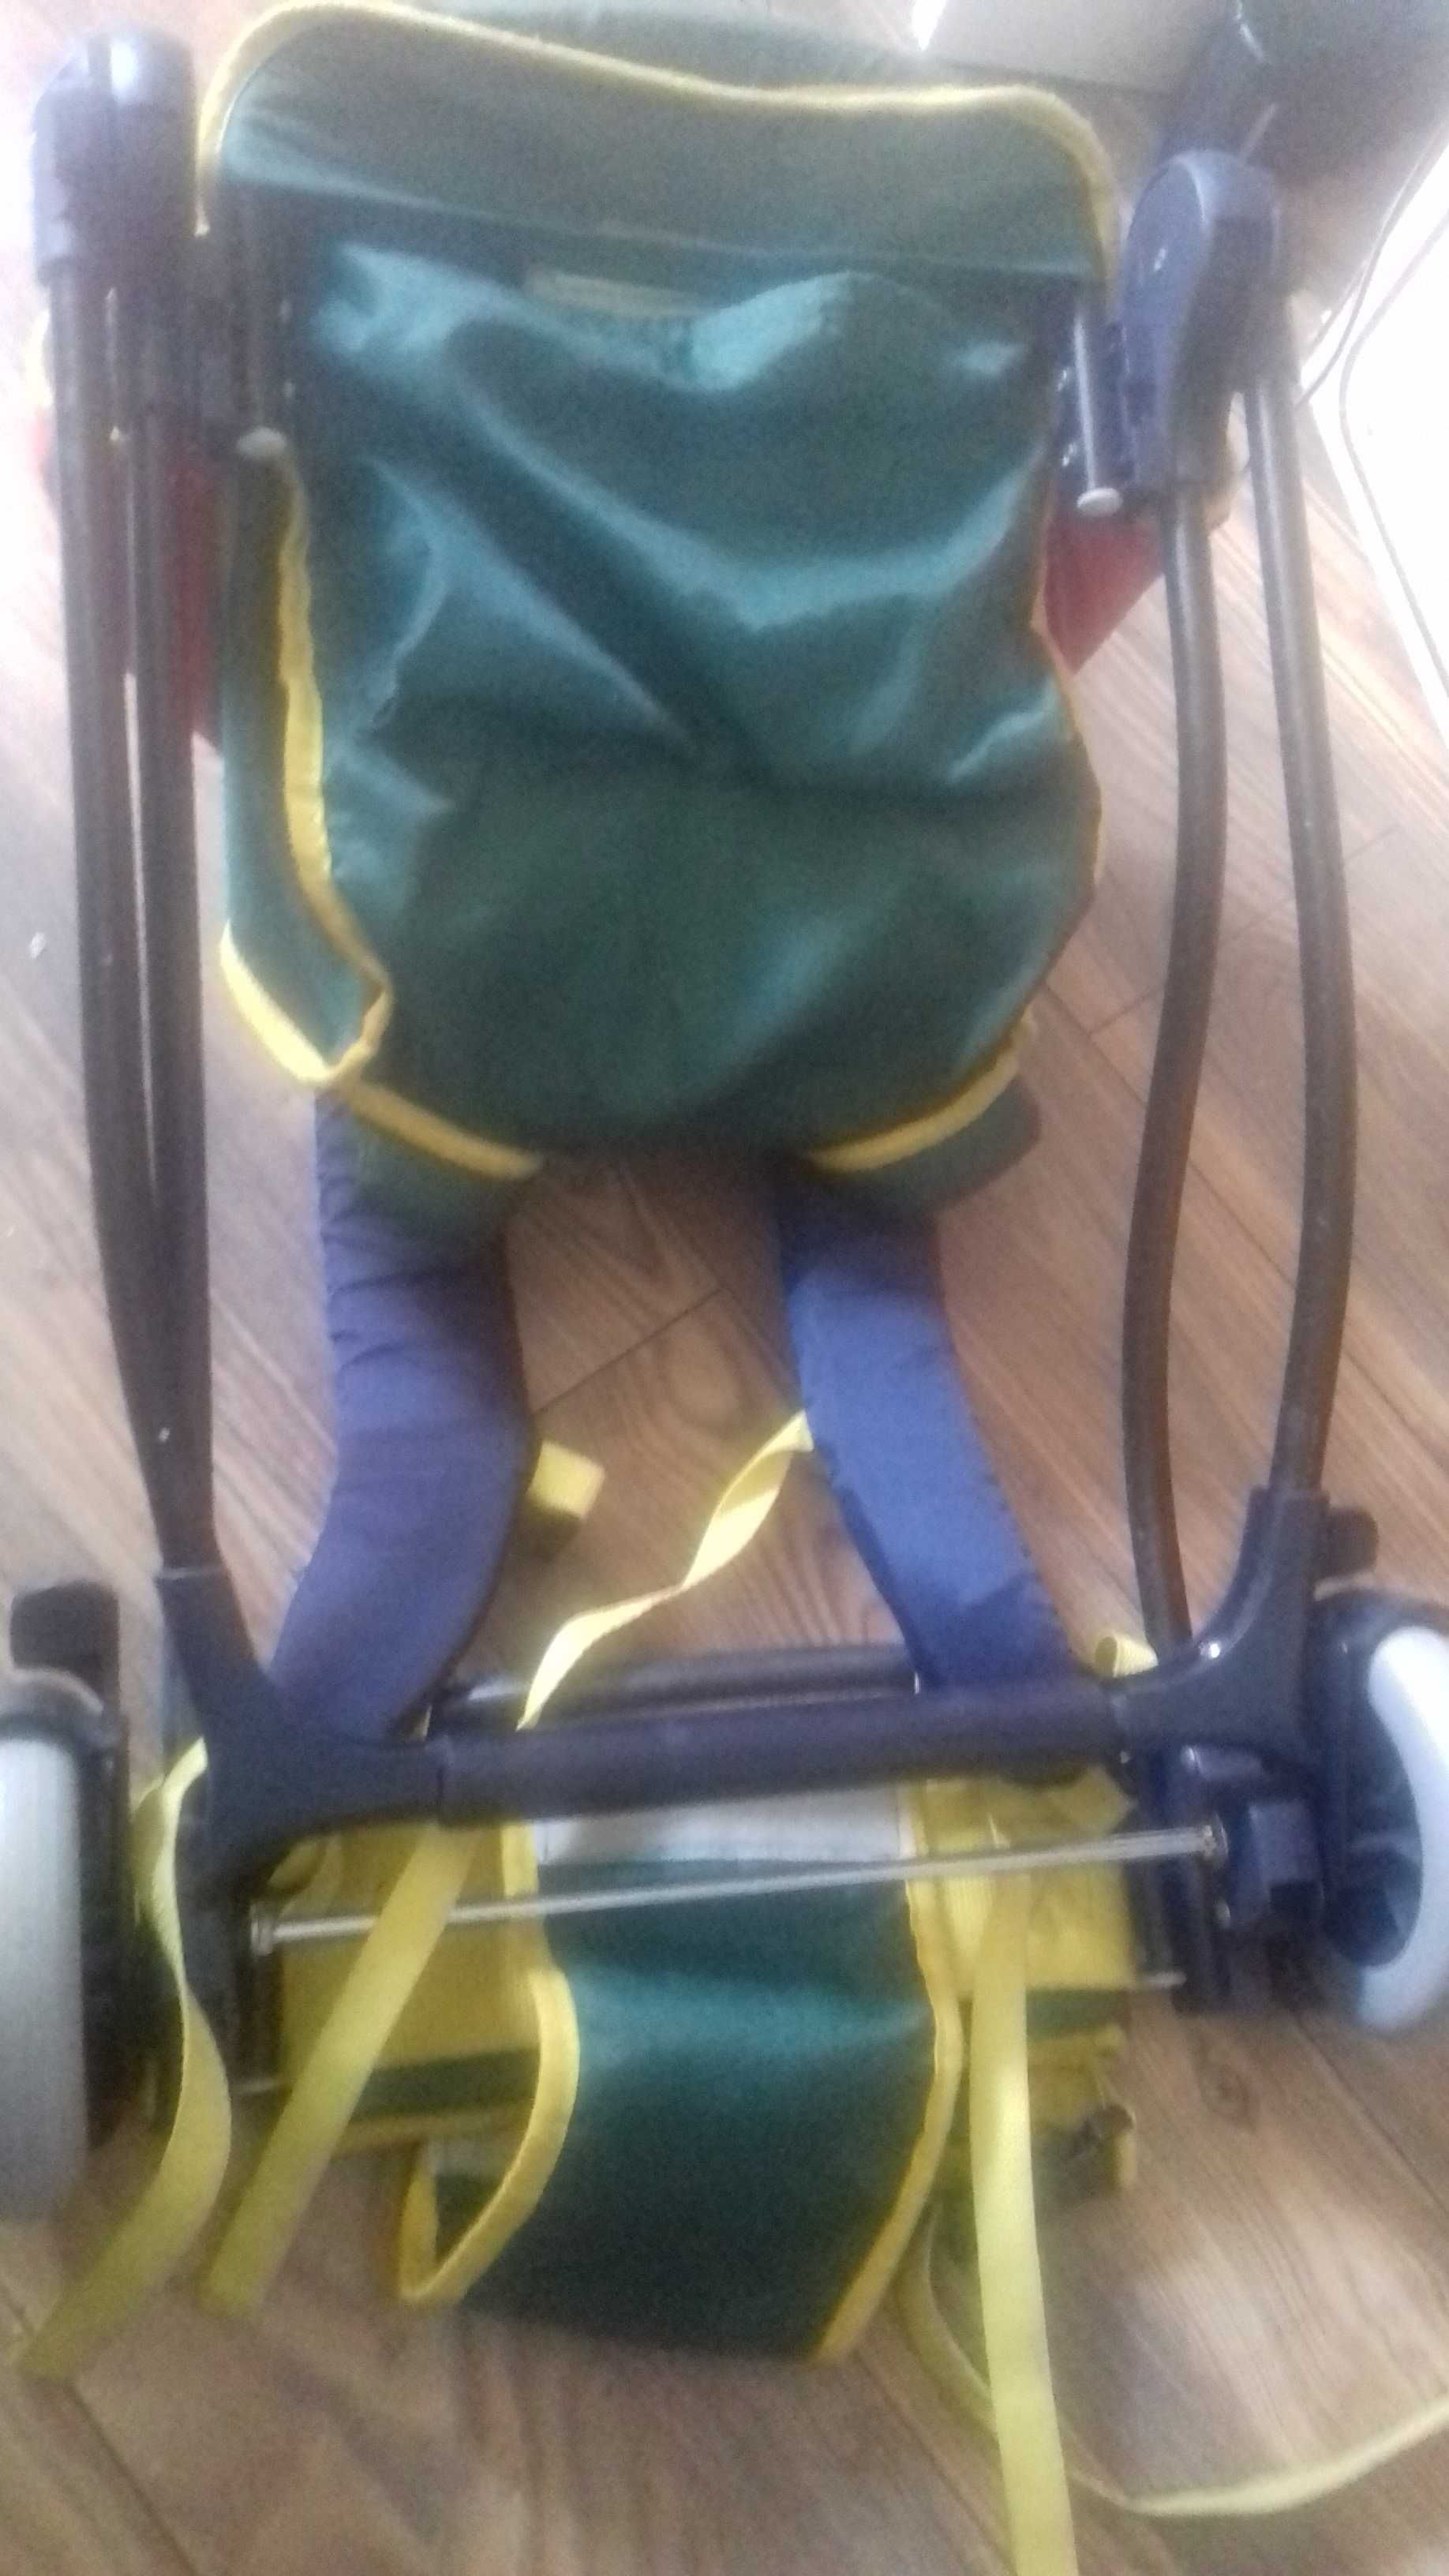 Quinny  dziecko nosidełko turystyczne kola mozliwa wysylka